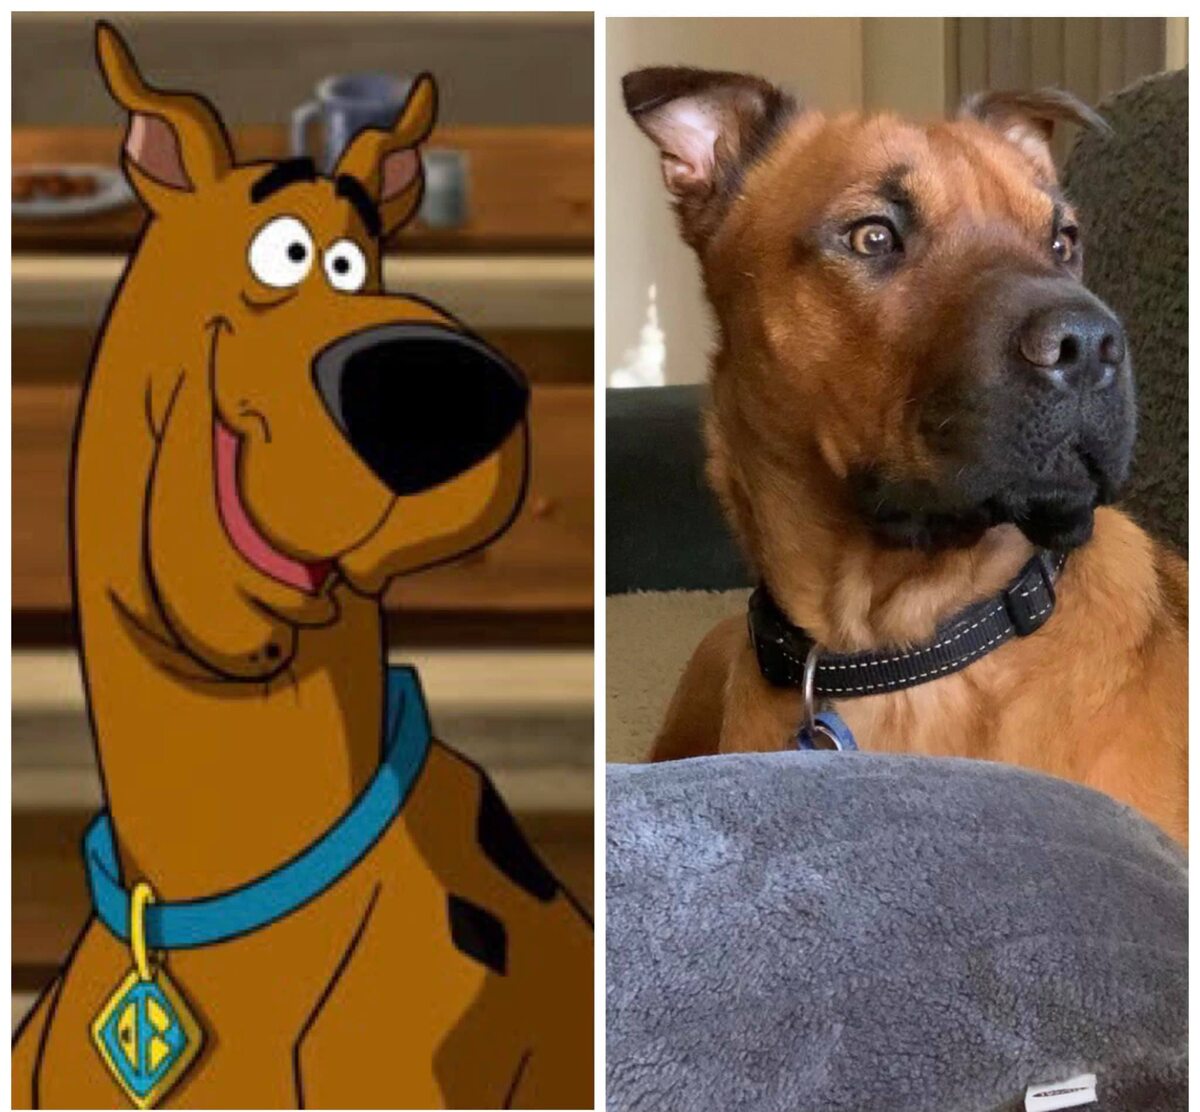 Scooby Doo 